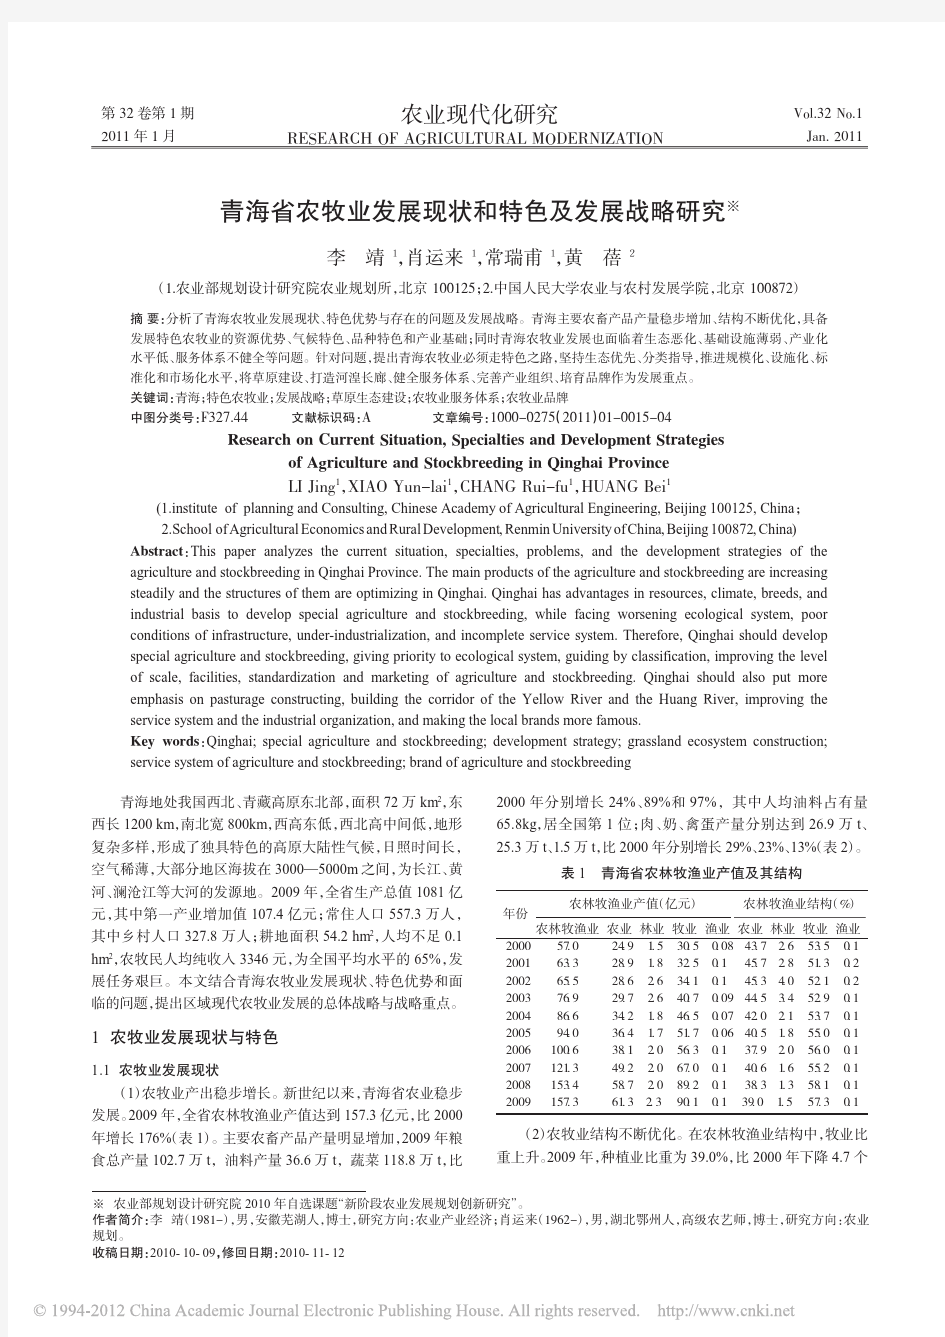 青海省农牧业发展现状和特色及发展战略研究